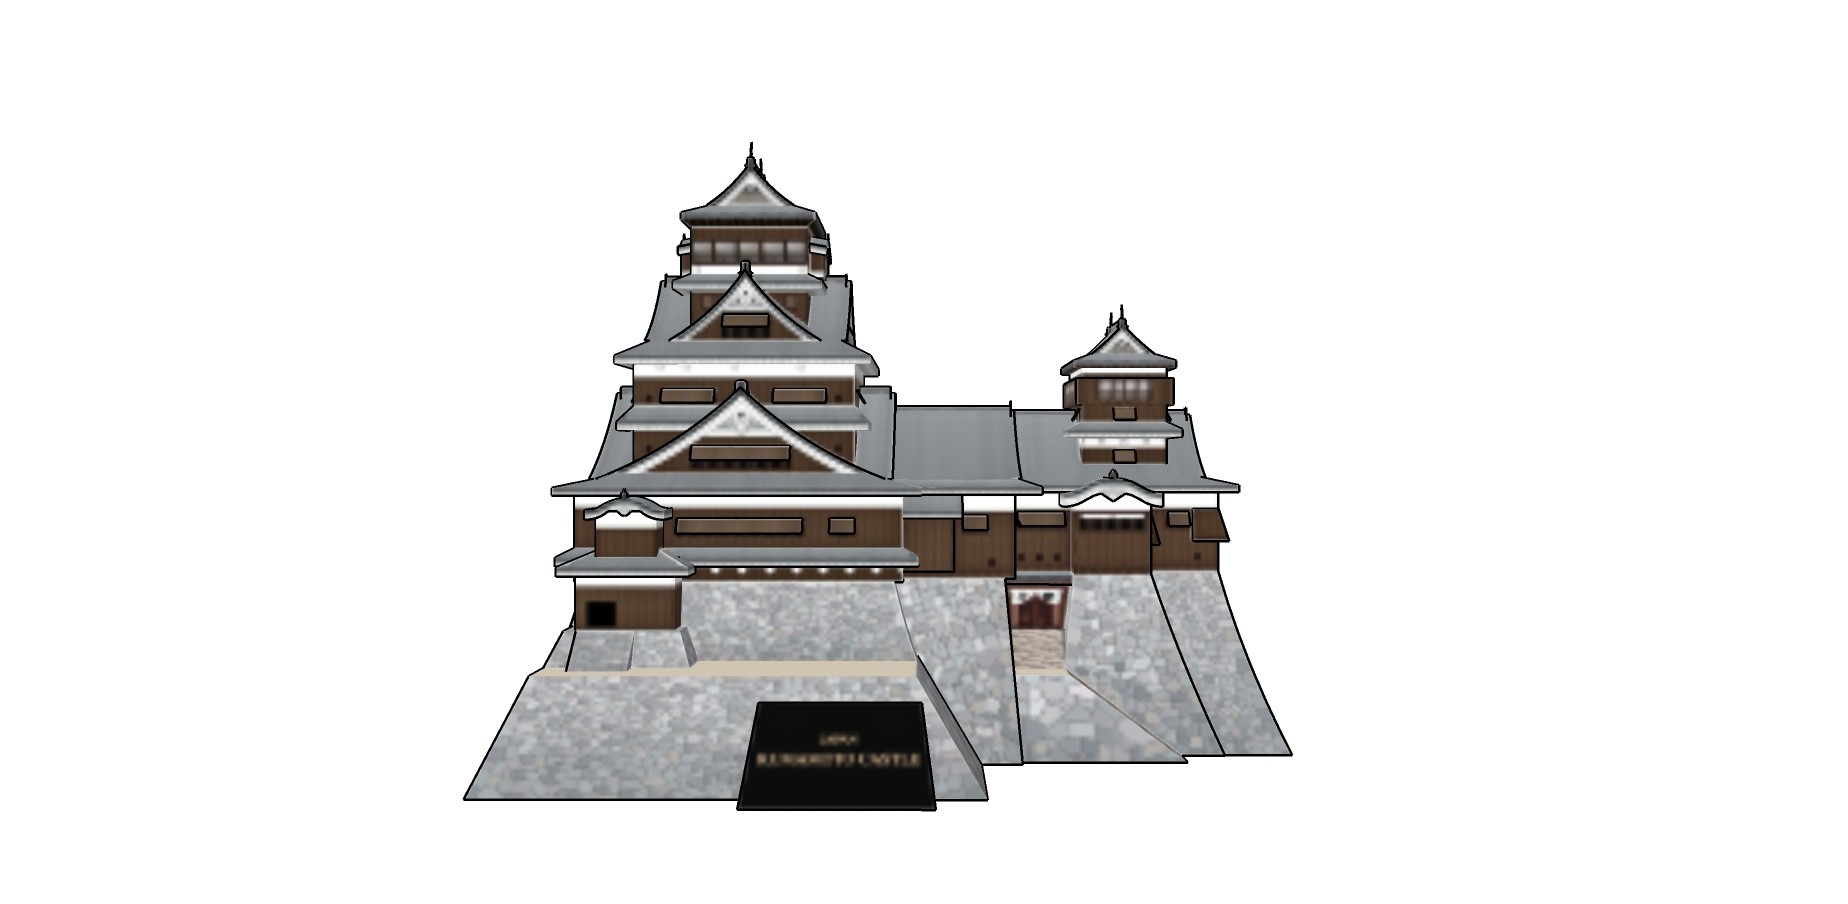 103日式古建城楼  日本古典风格寺庙 塔 古建筑  中式塔楼su草图模型下载